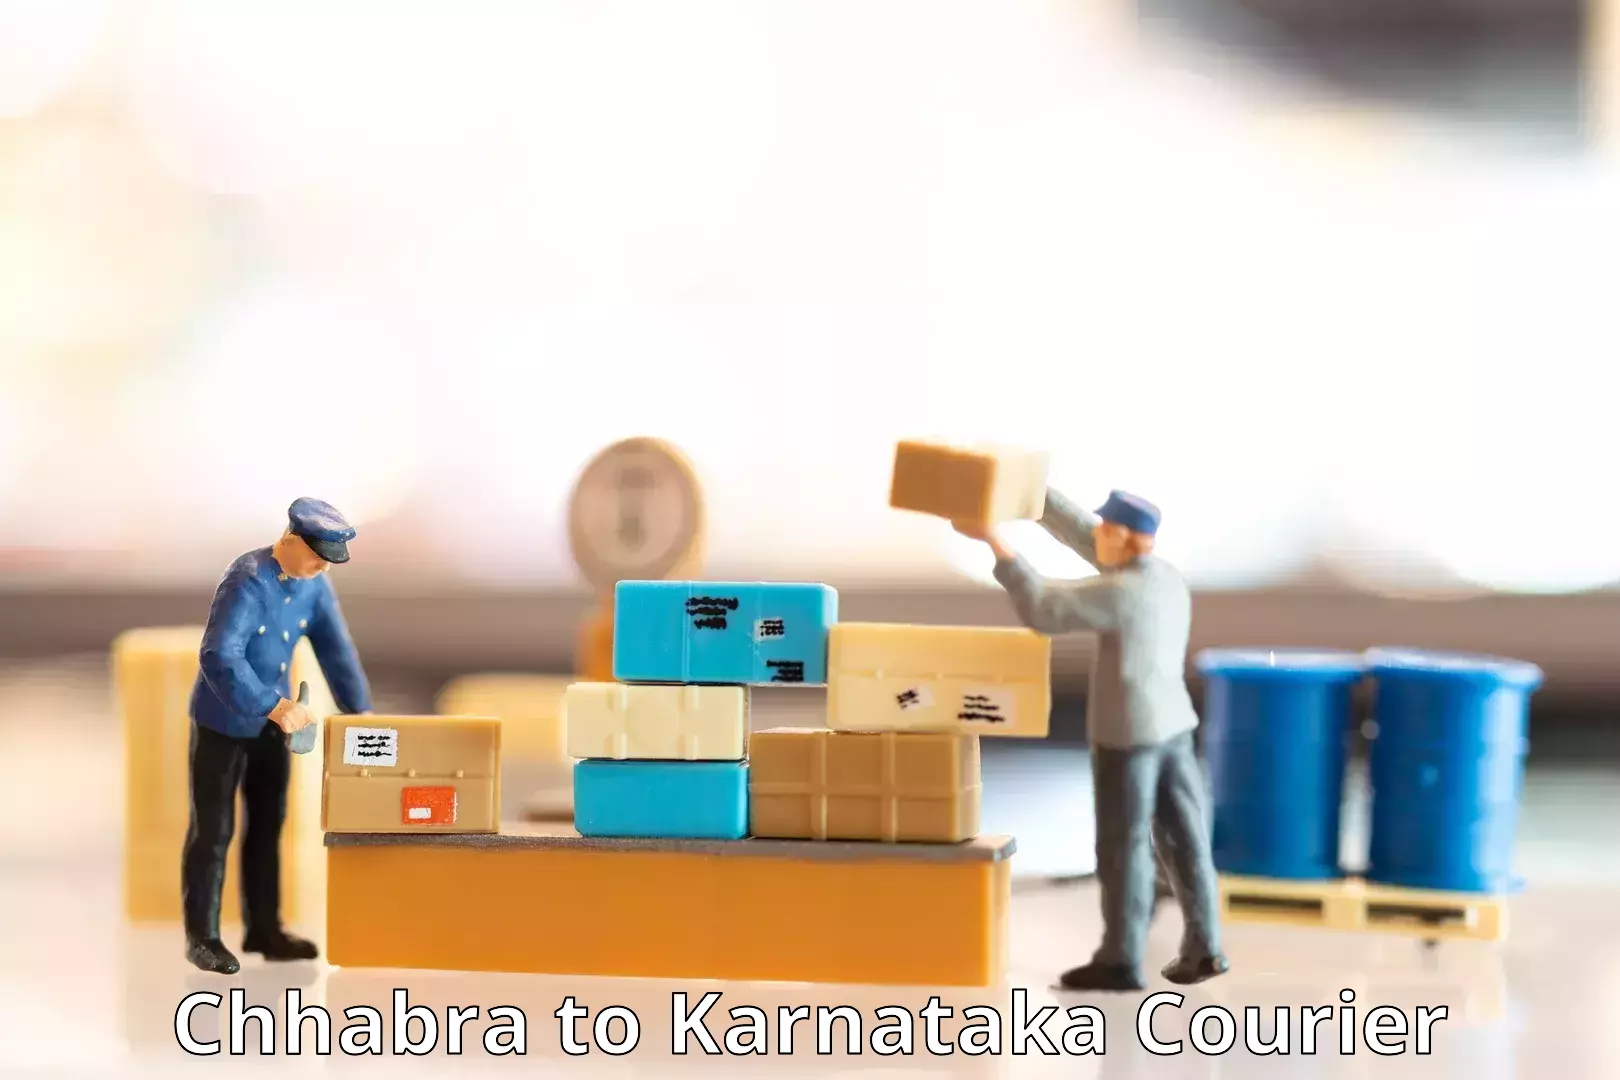 Nationwide shipping capabilities Chhabra to Karnataka